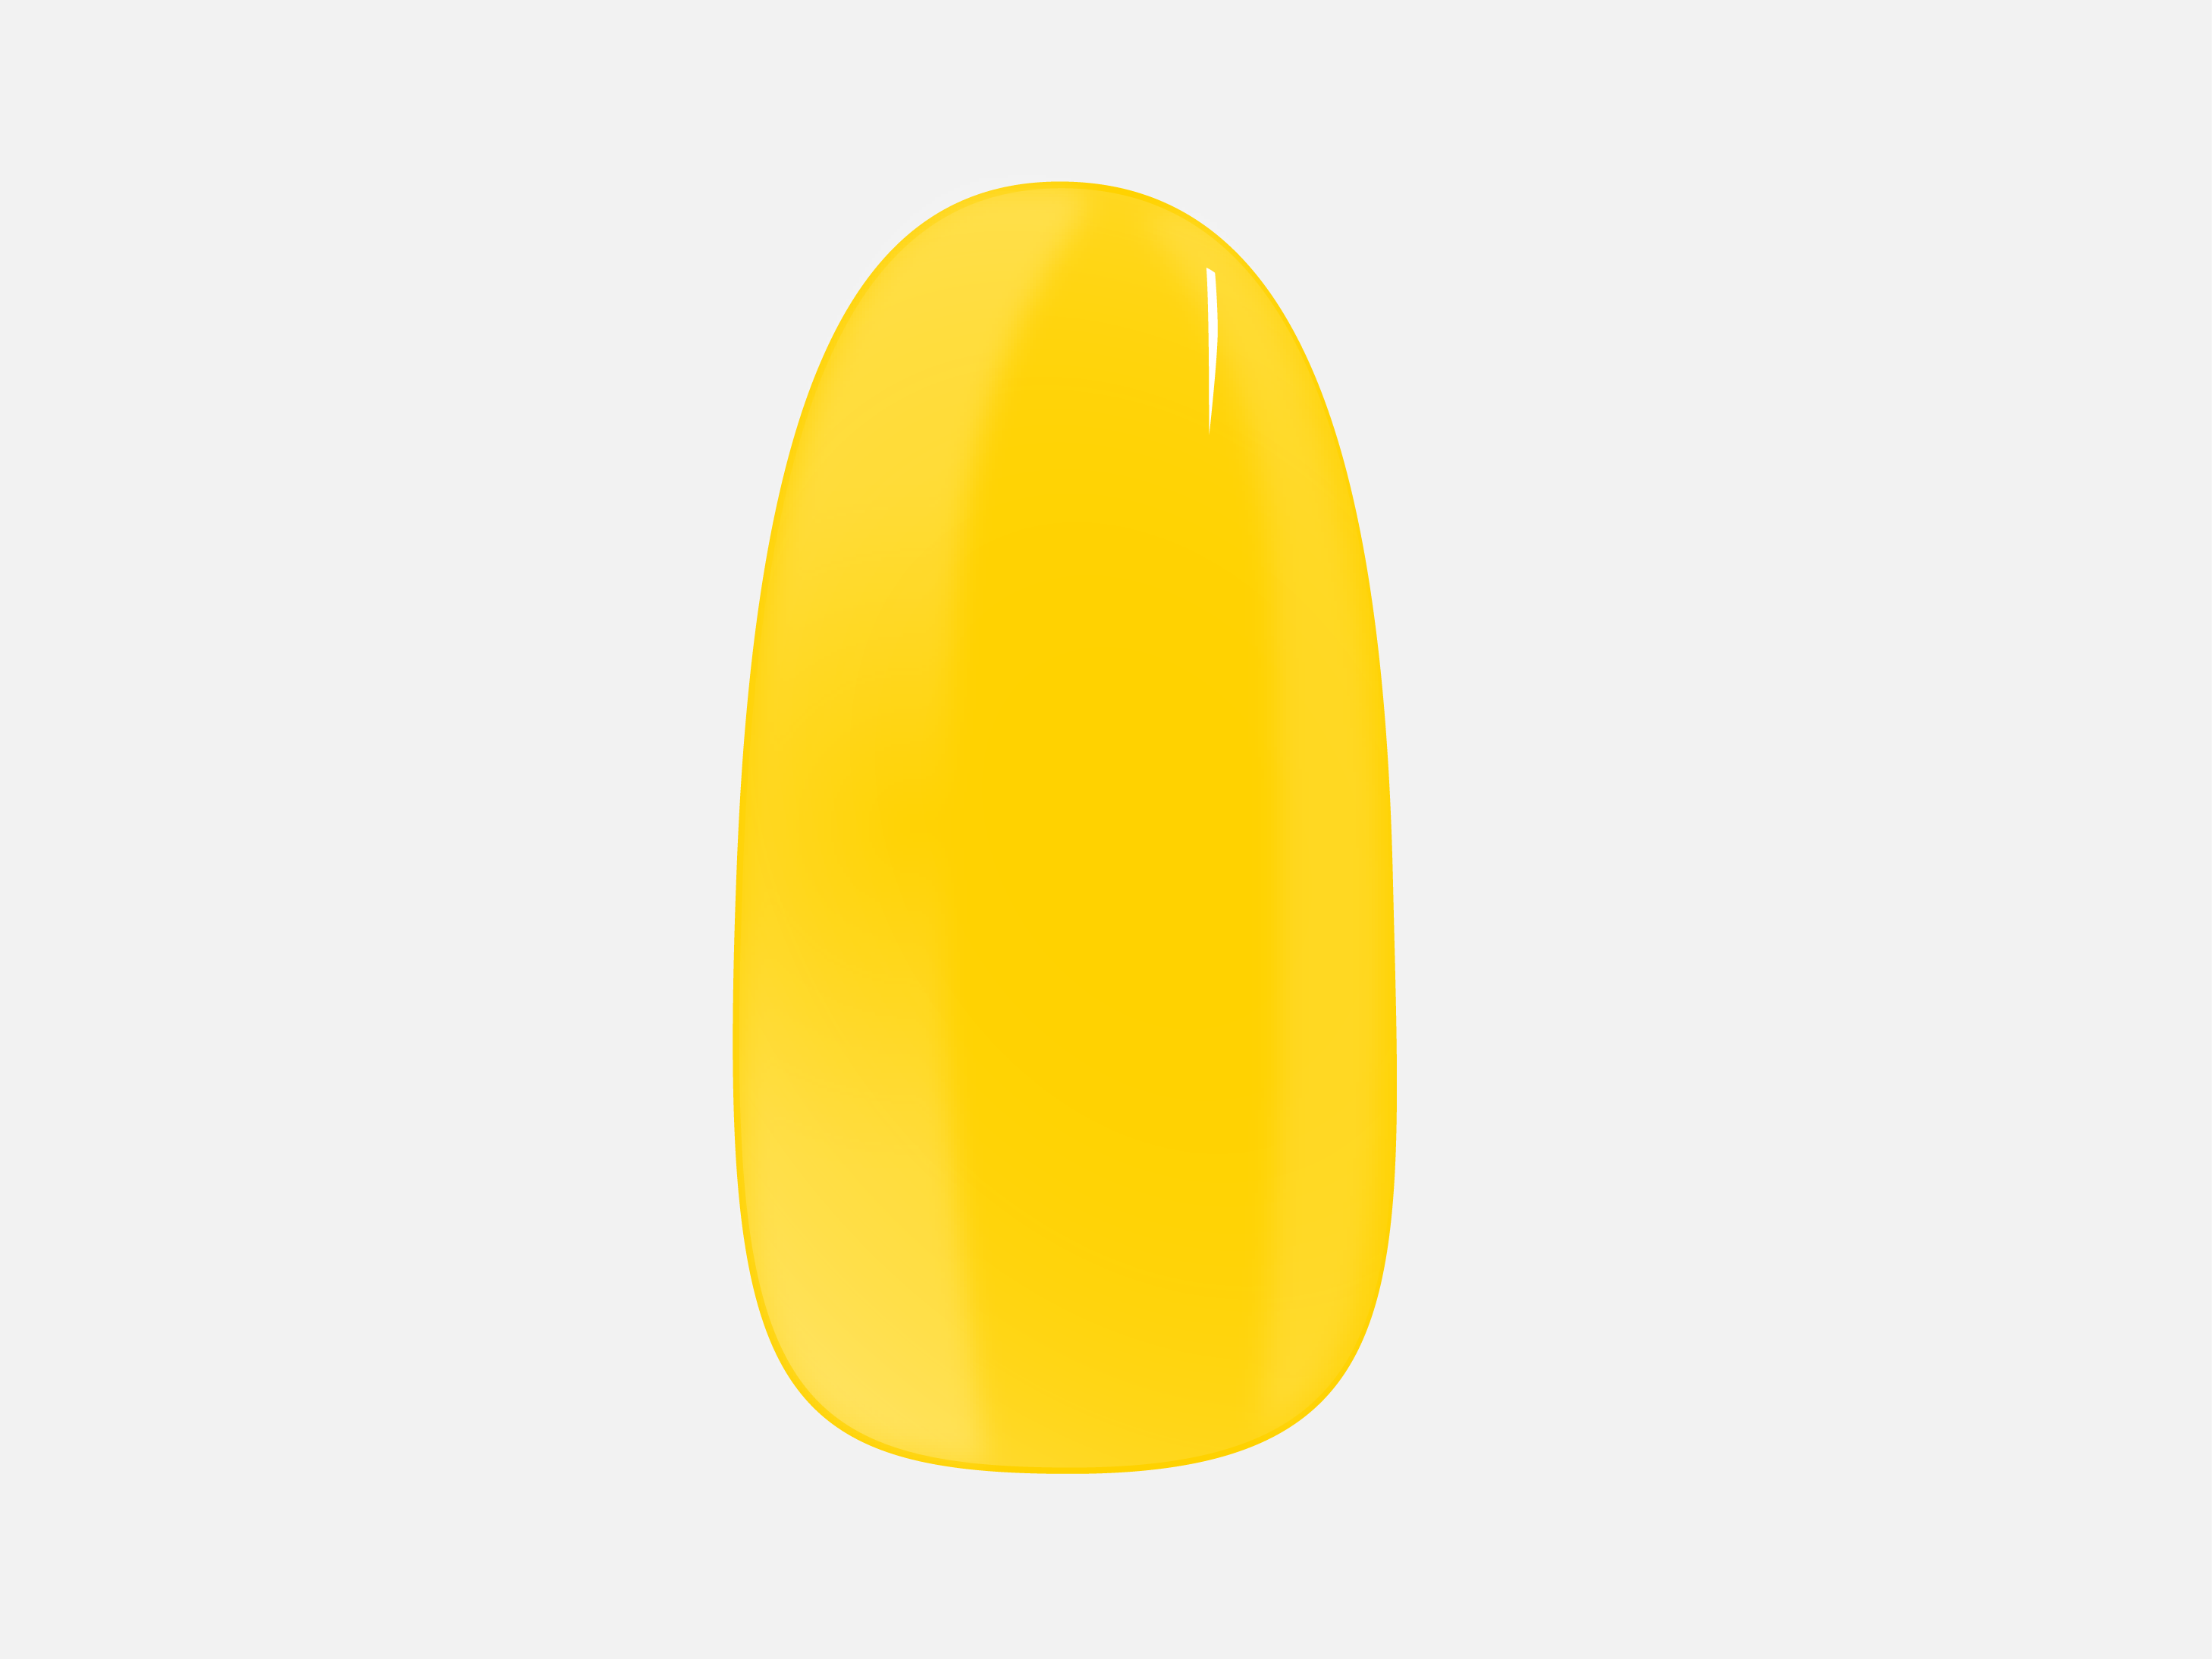  Bella's Yellow is de gele nagel van de Maniac gellak stickers collectie